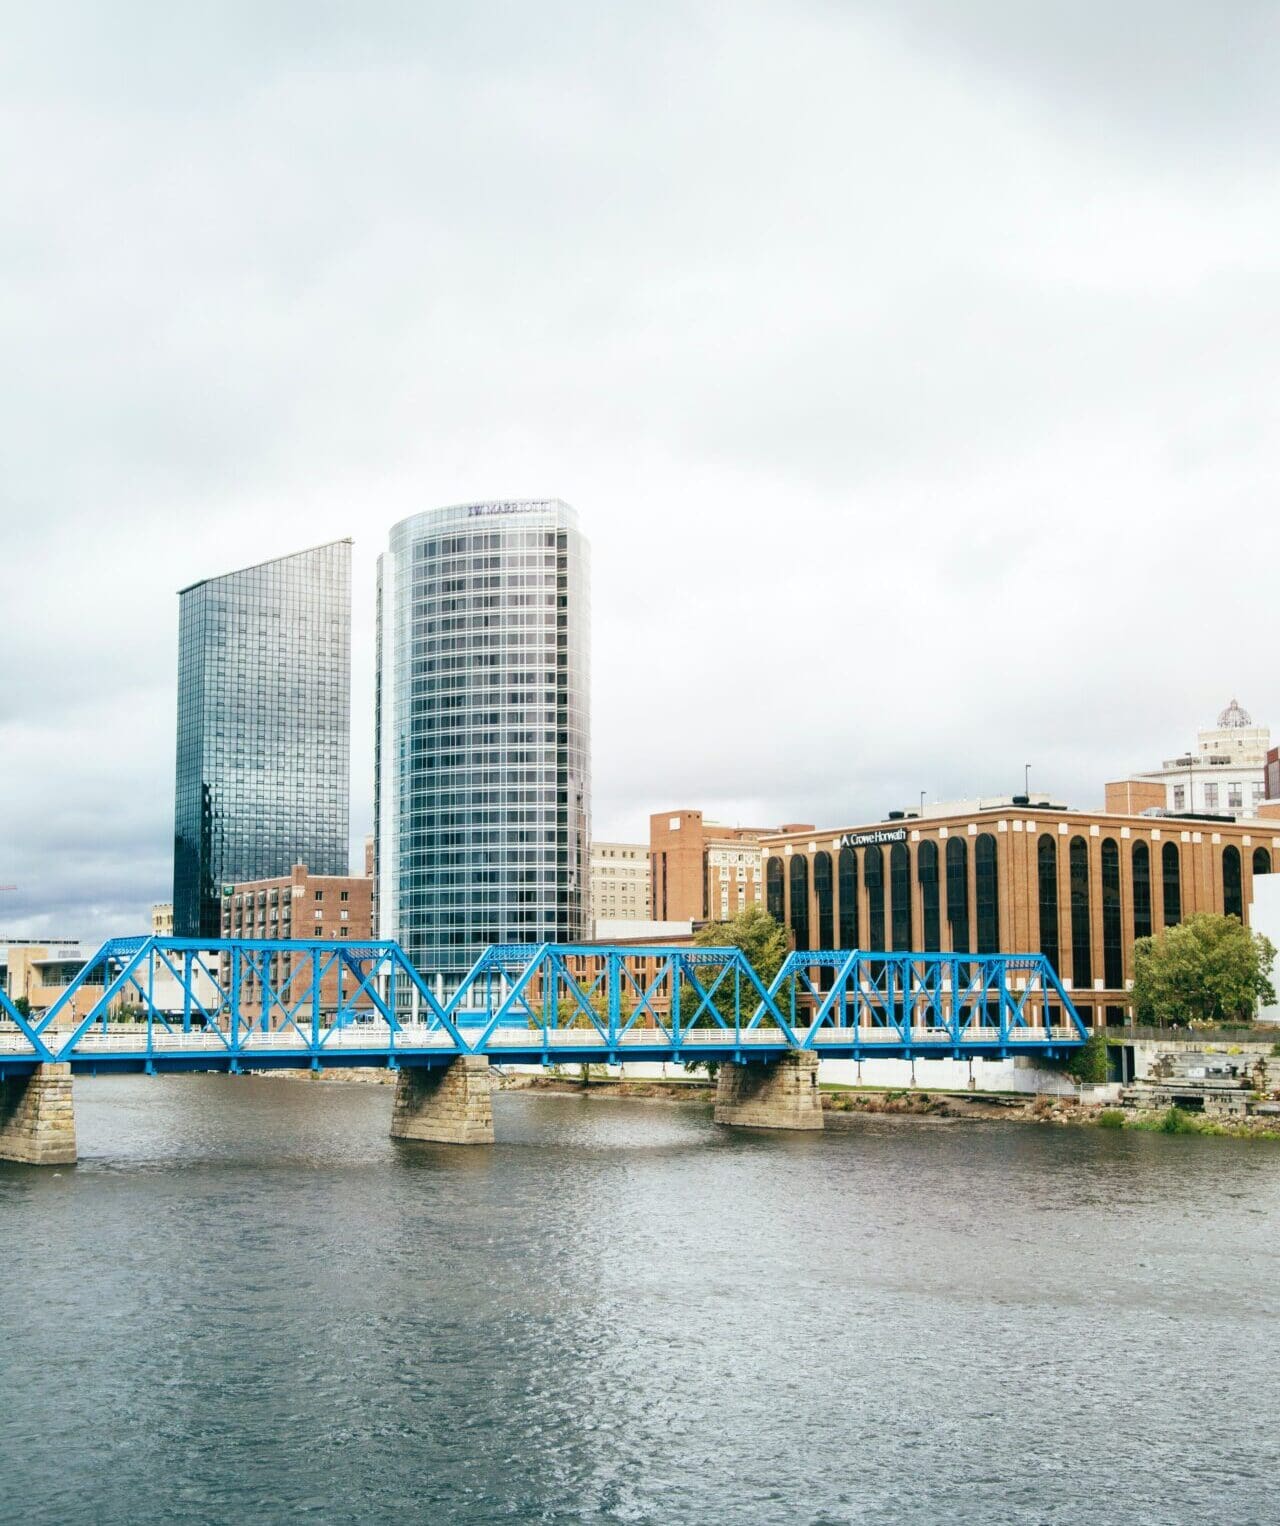 A blue bridge against industrial skyscrapers in Grand Rapids, Michigan